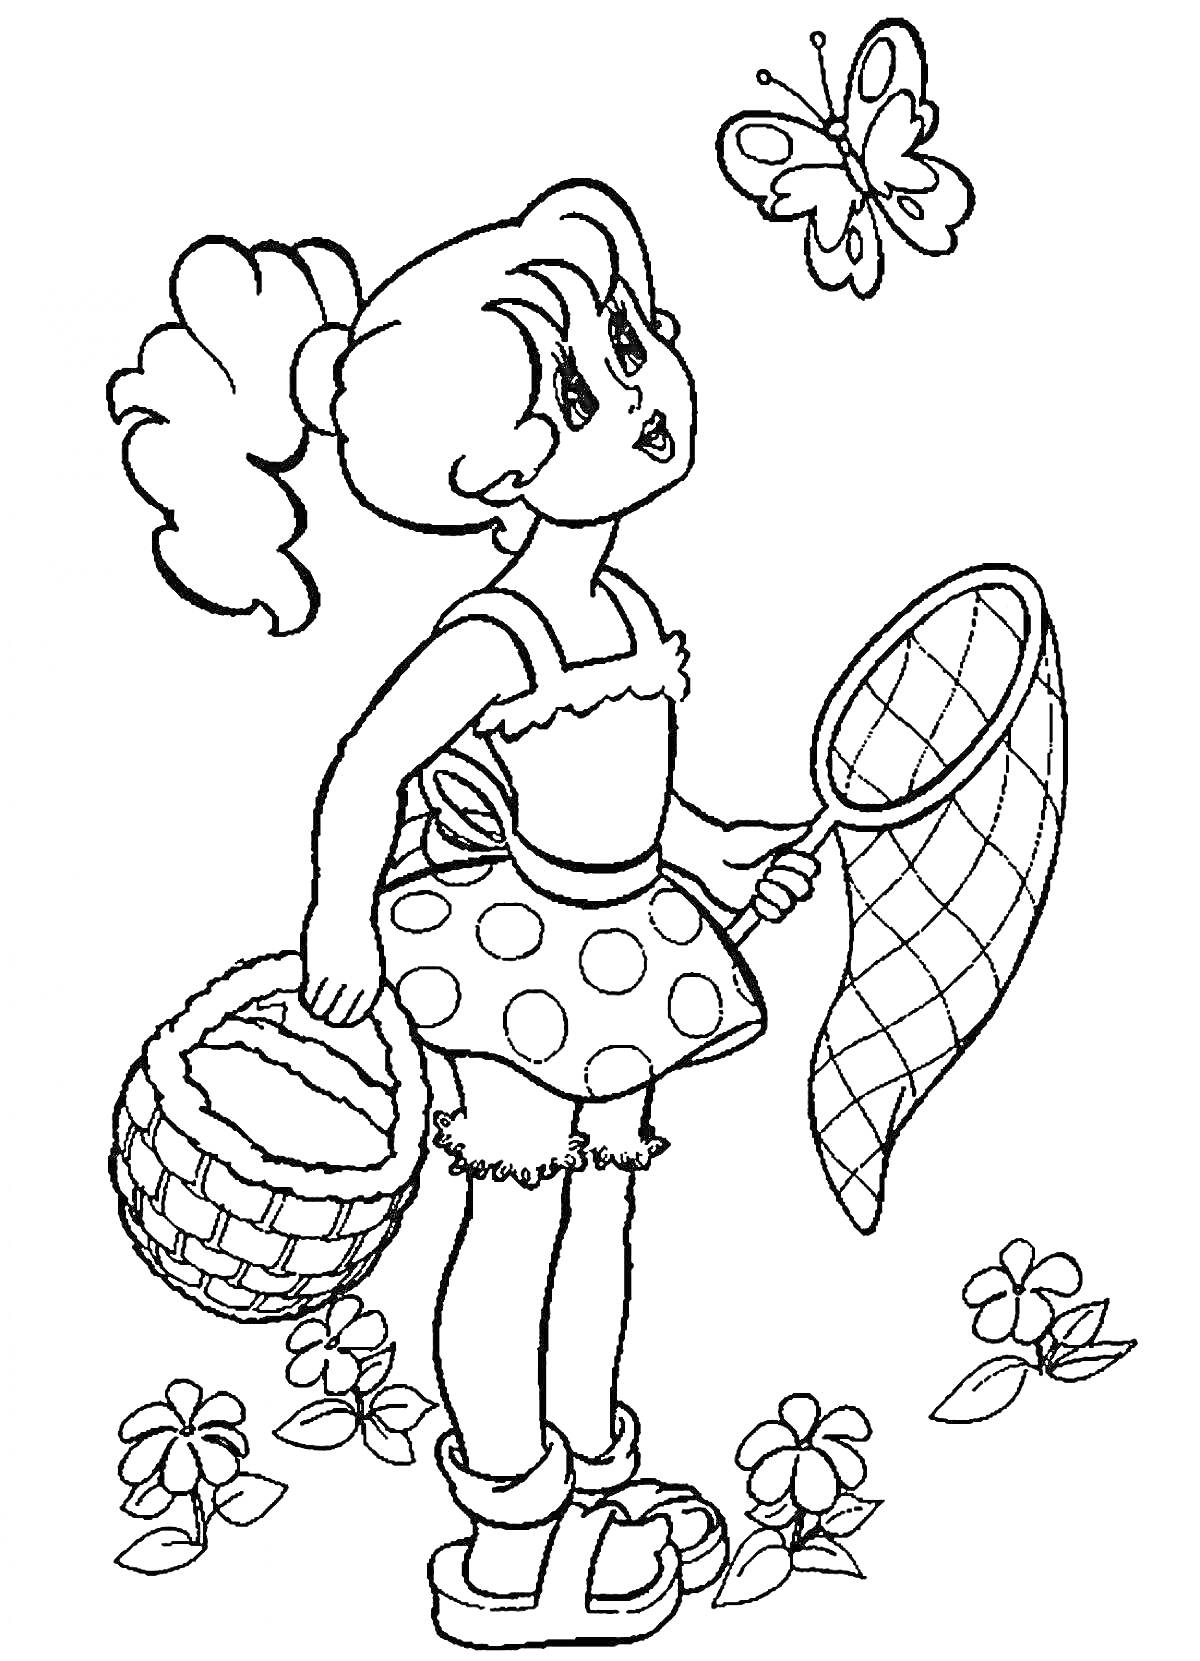 Девочка с корзинкой и сачком для ловли бабочек, стоящая среди цветов и смотрящая на бабочку